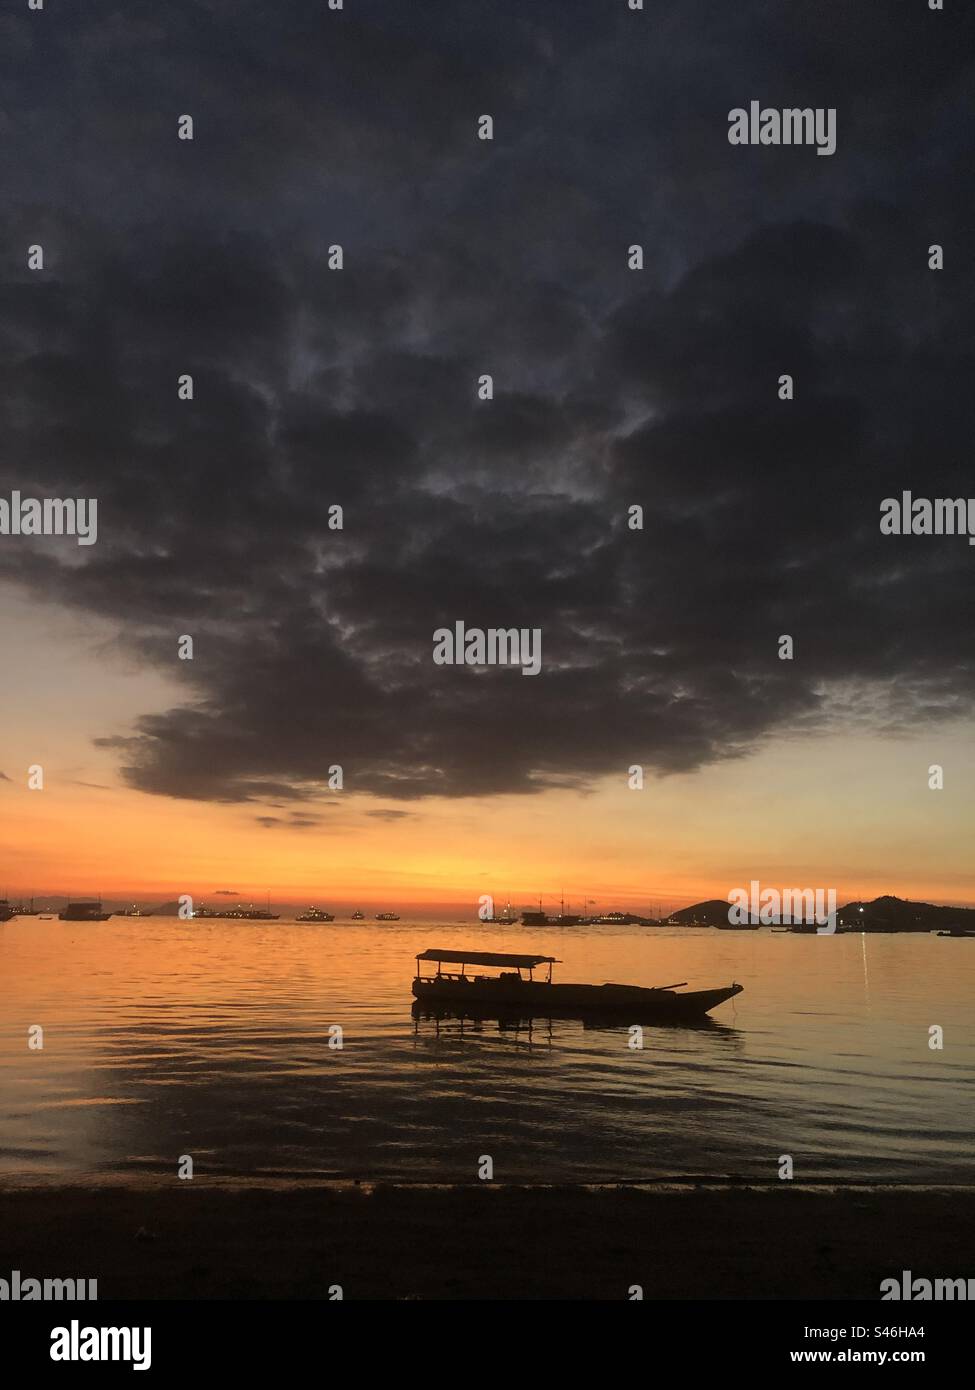 Golden Horizons: Fangen Sie die ruhige Schönheit des Sonnenuntergangs am Strand ein, wo das Boot seinen ruhigen Ort findet. Stockfoto